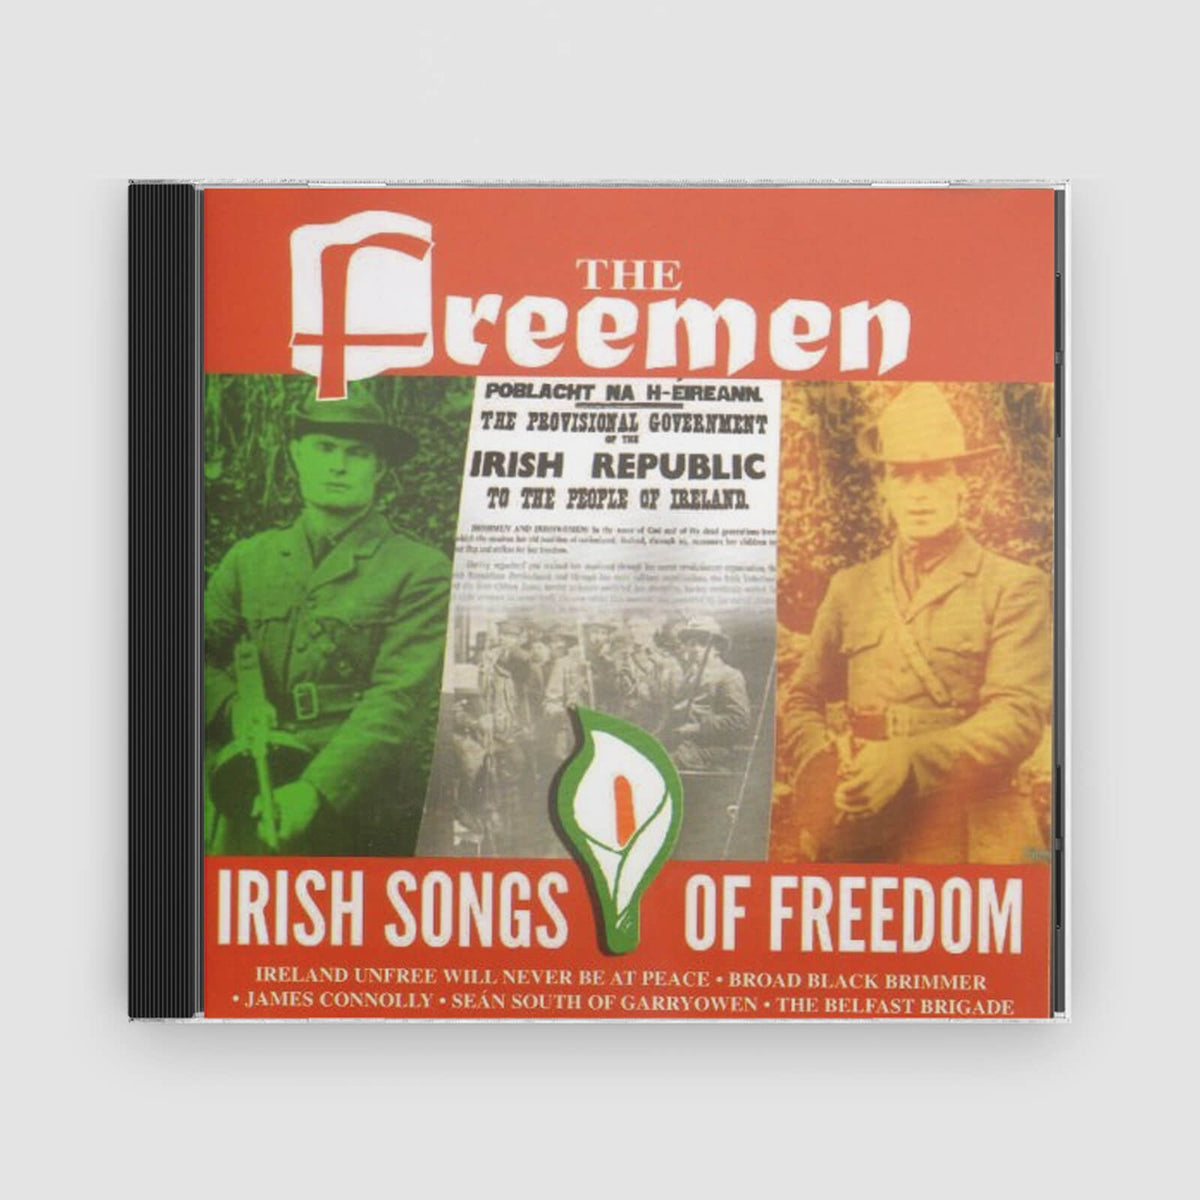 The Freemen : Irish Songs Of Freedom